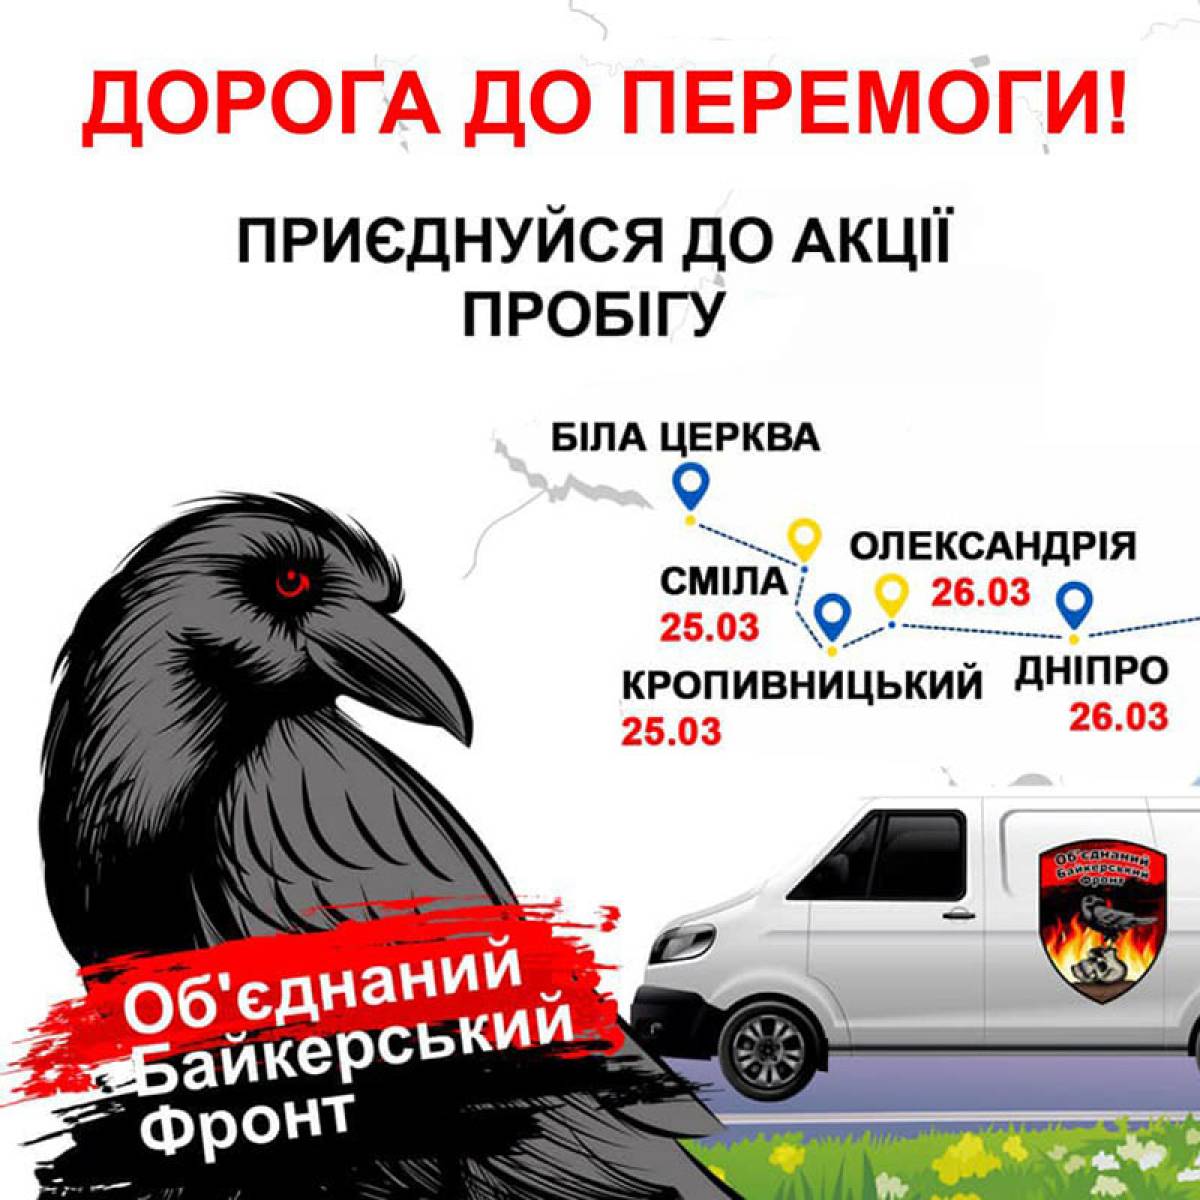 «ДОРОГА ДО ПЕРЕМОГИ» - Всеукраінська акція